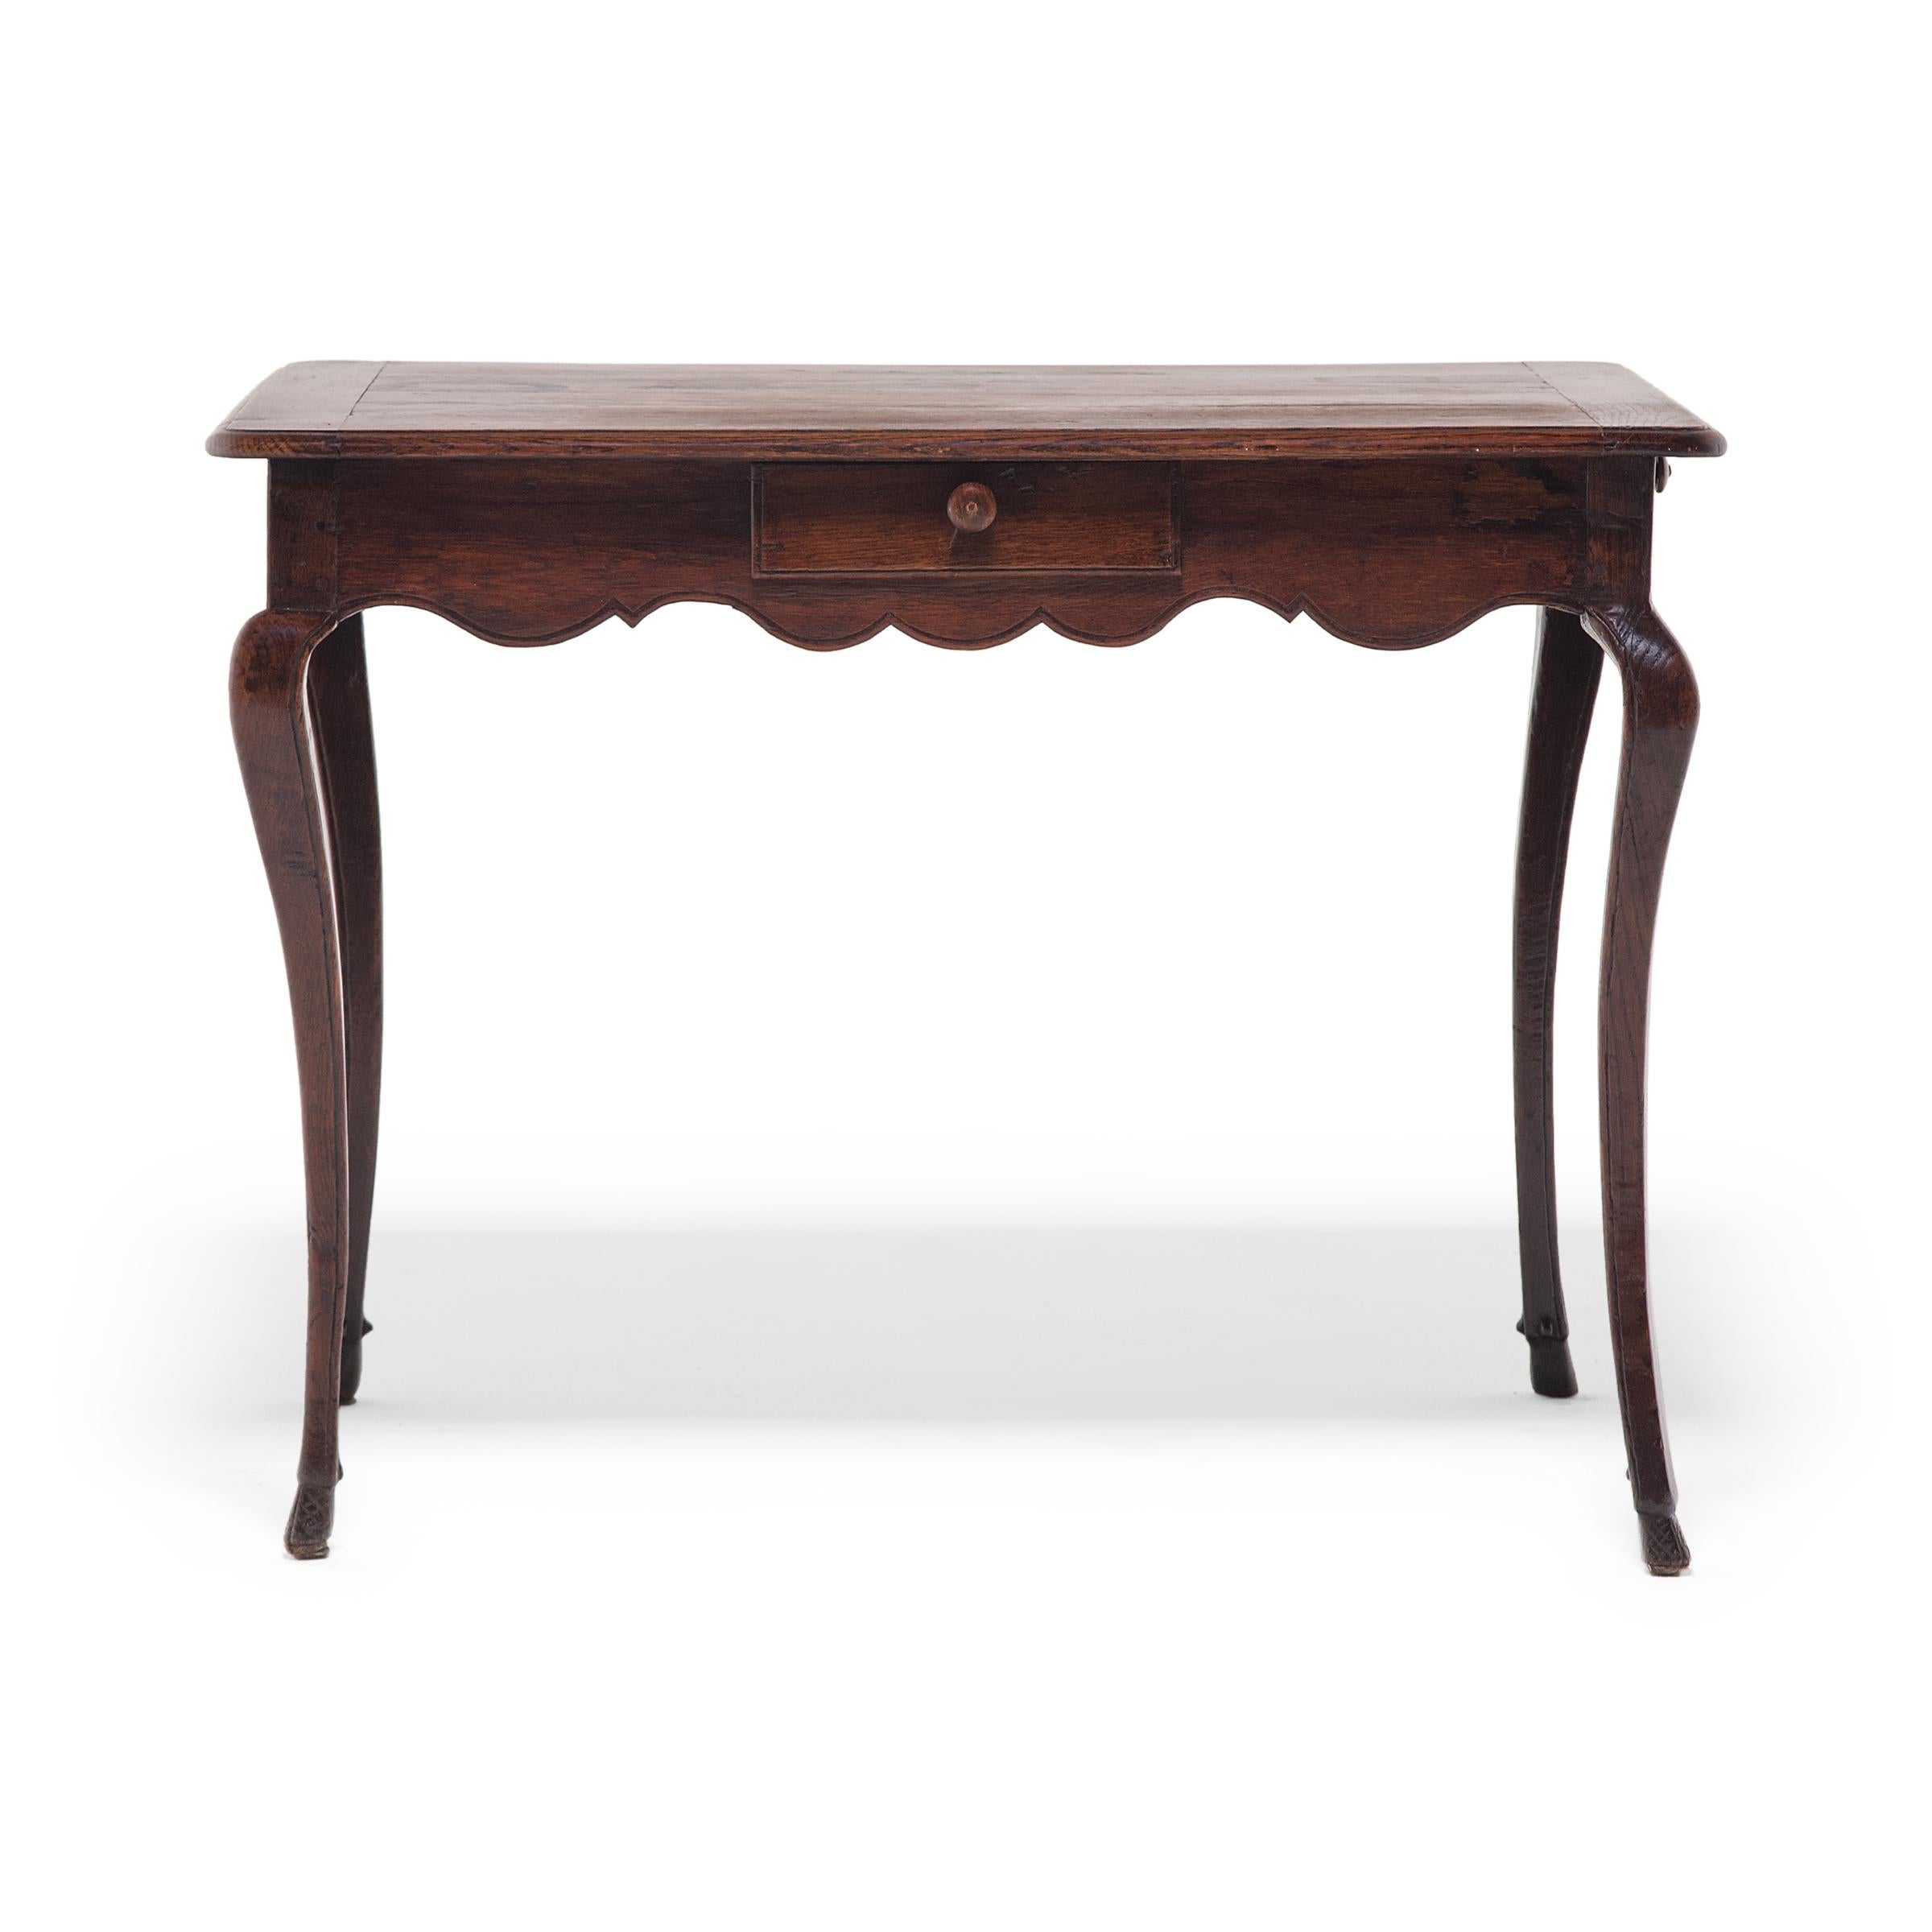 Cette élégante table à thé a été fabriquée en France à la fin du XIXe siècle dans le style Louis XV, défini par son tablier festonné et ses fins pieds cabrioles. Les pieds en forme de S s'incurvent vers l'extérieur à partir du sommet avec un